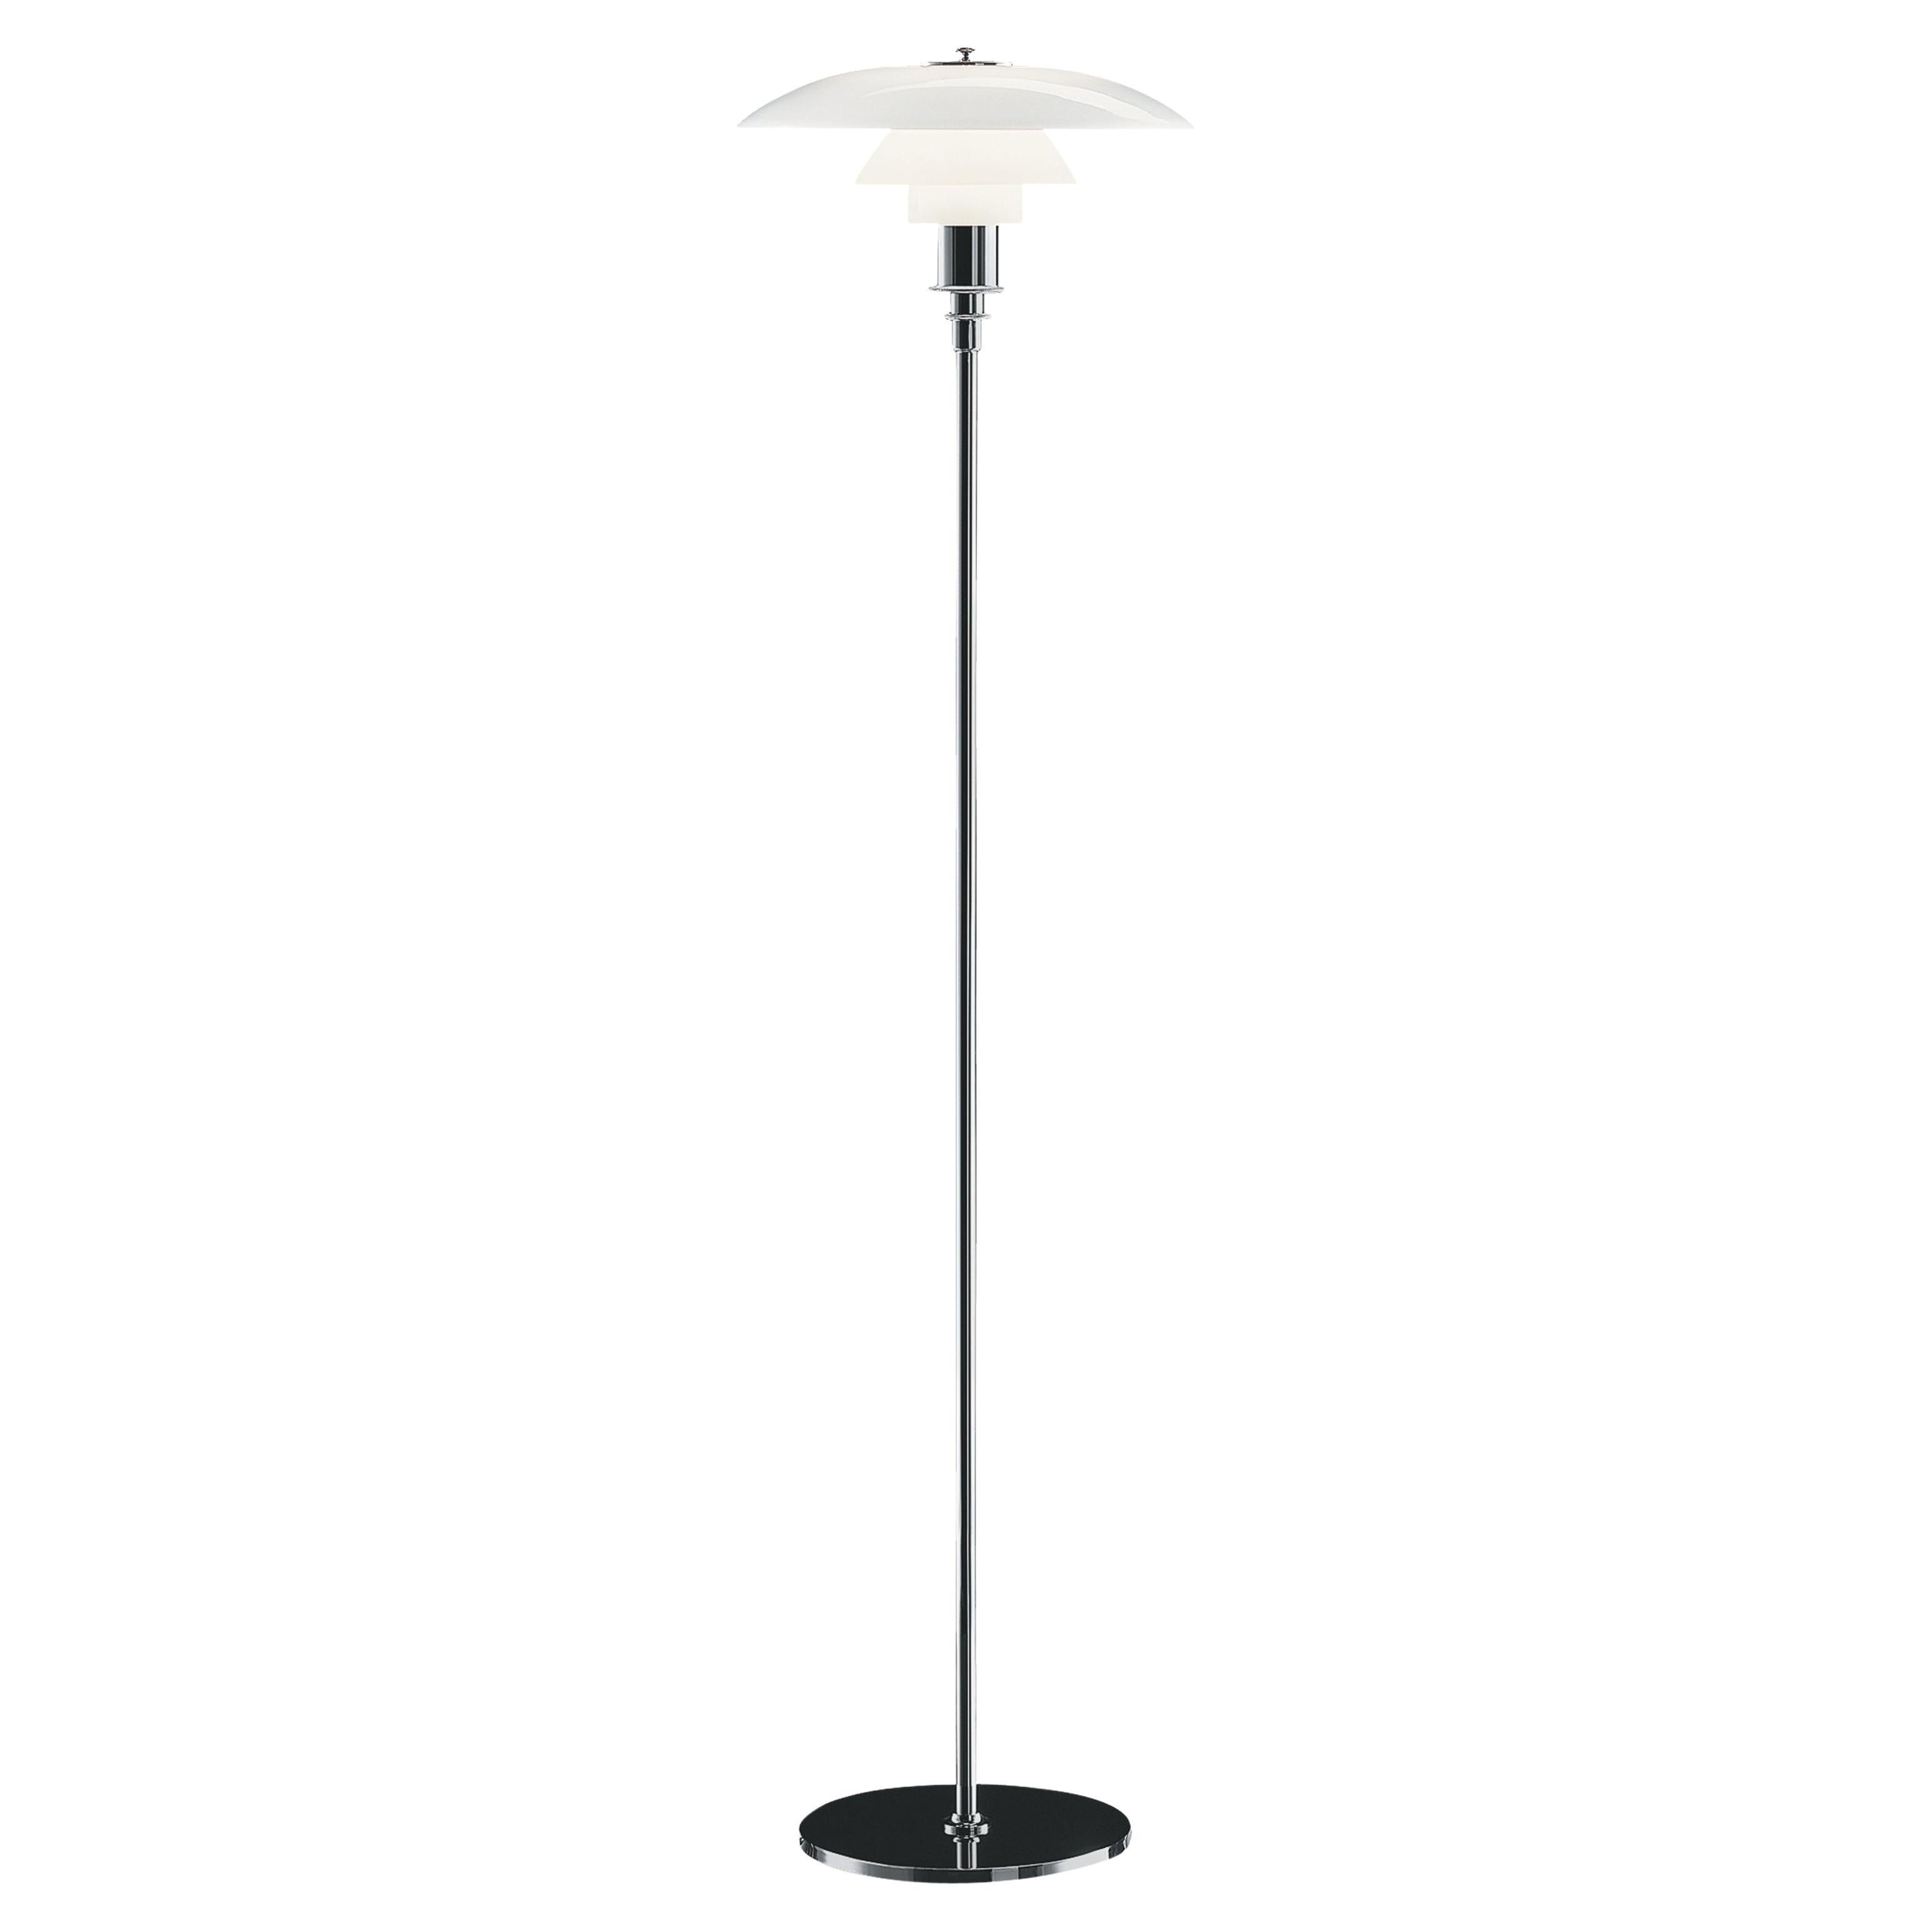 Louis Poulsen PH 3½-2½ Floor Lamp in Chrome by Poul Henningsen